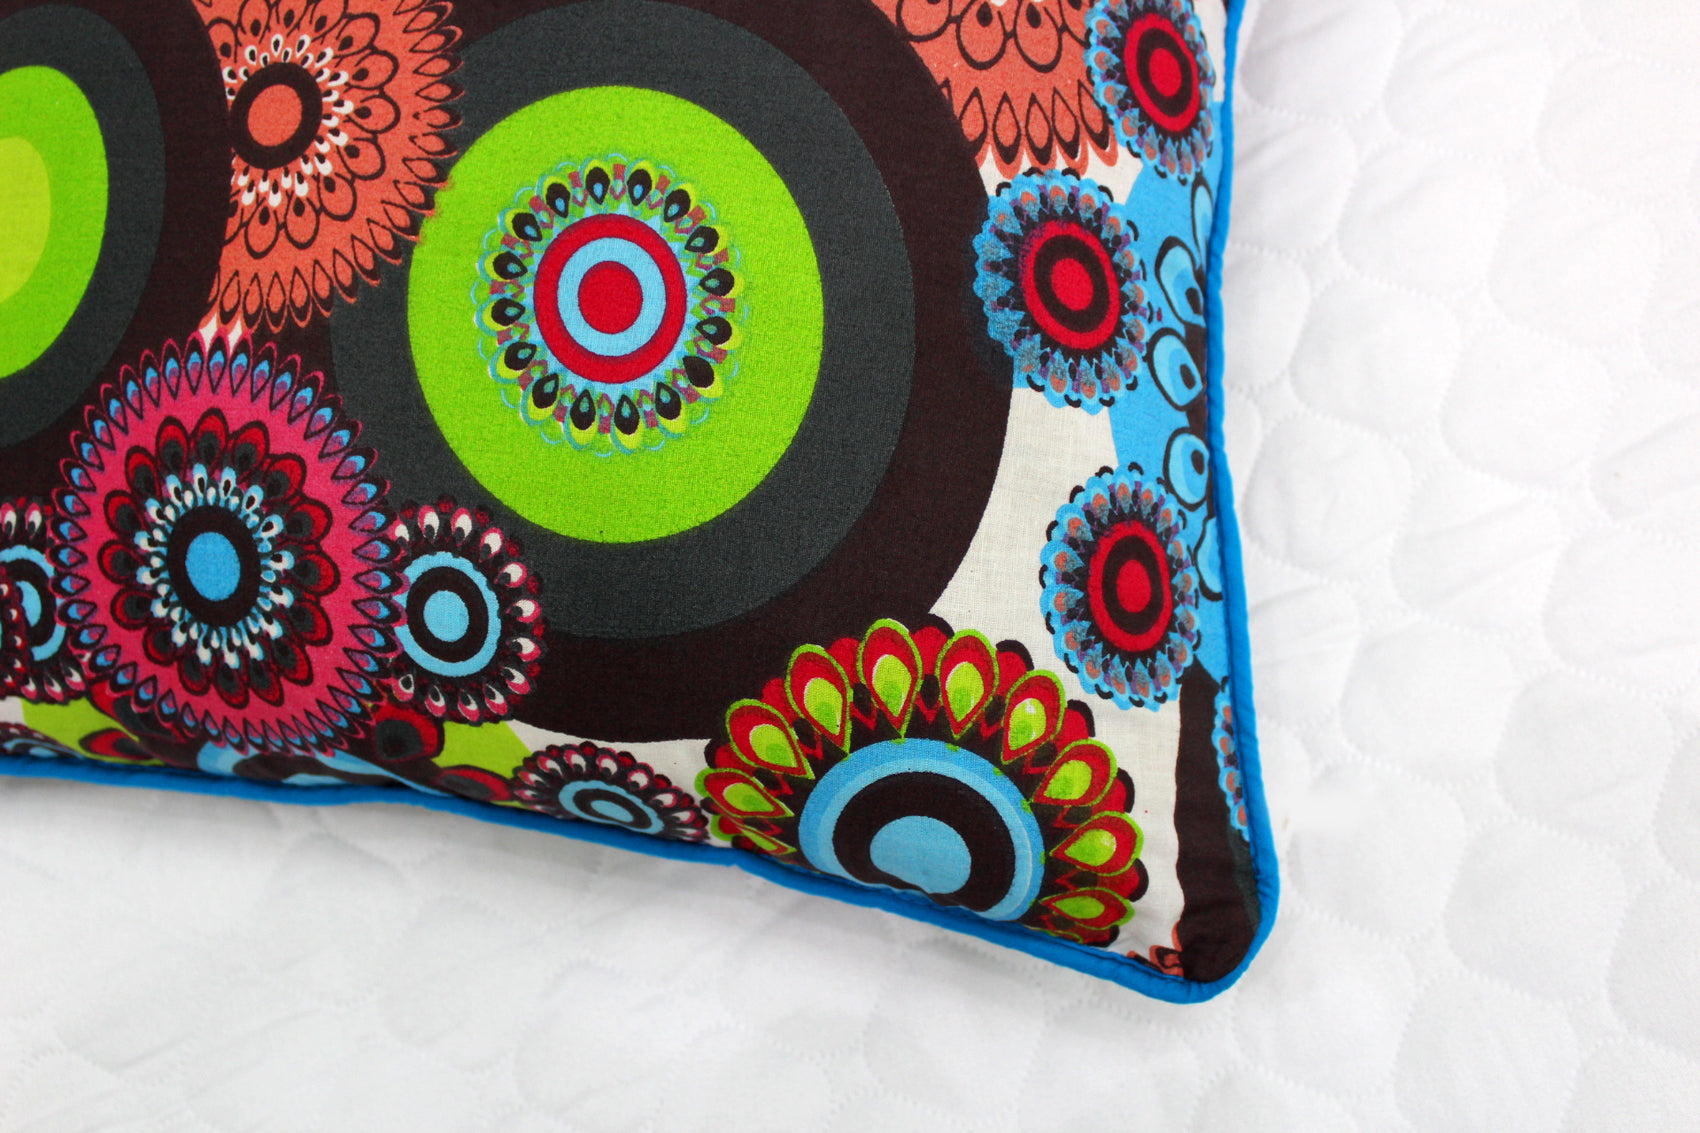 Quartz Printed Floral Cotton Cushion Cover - Multi Color